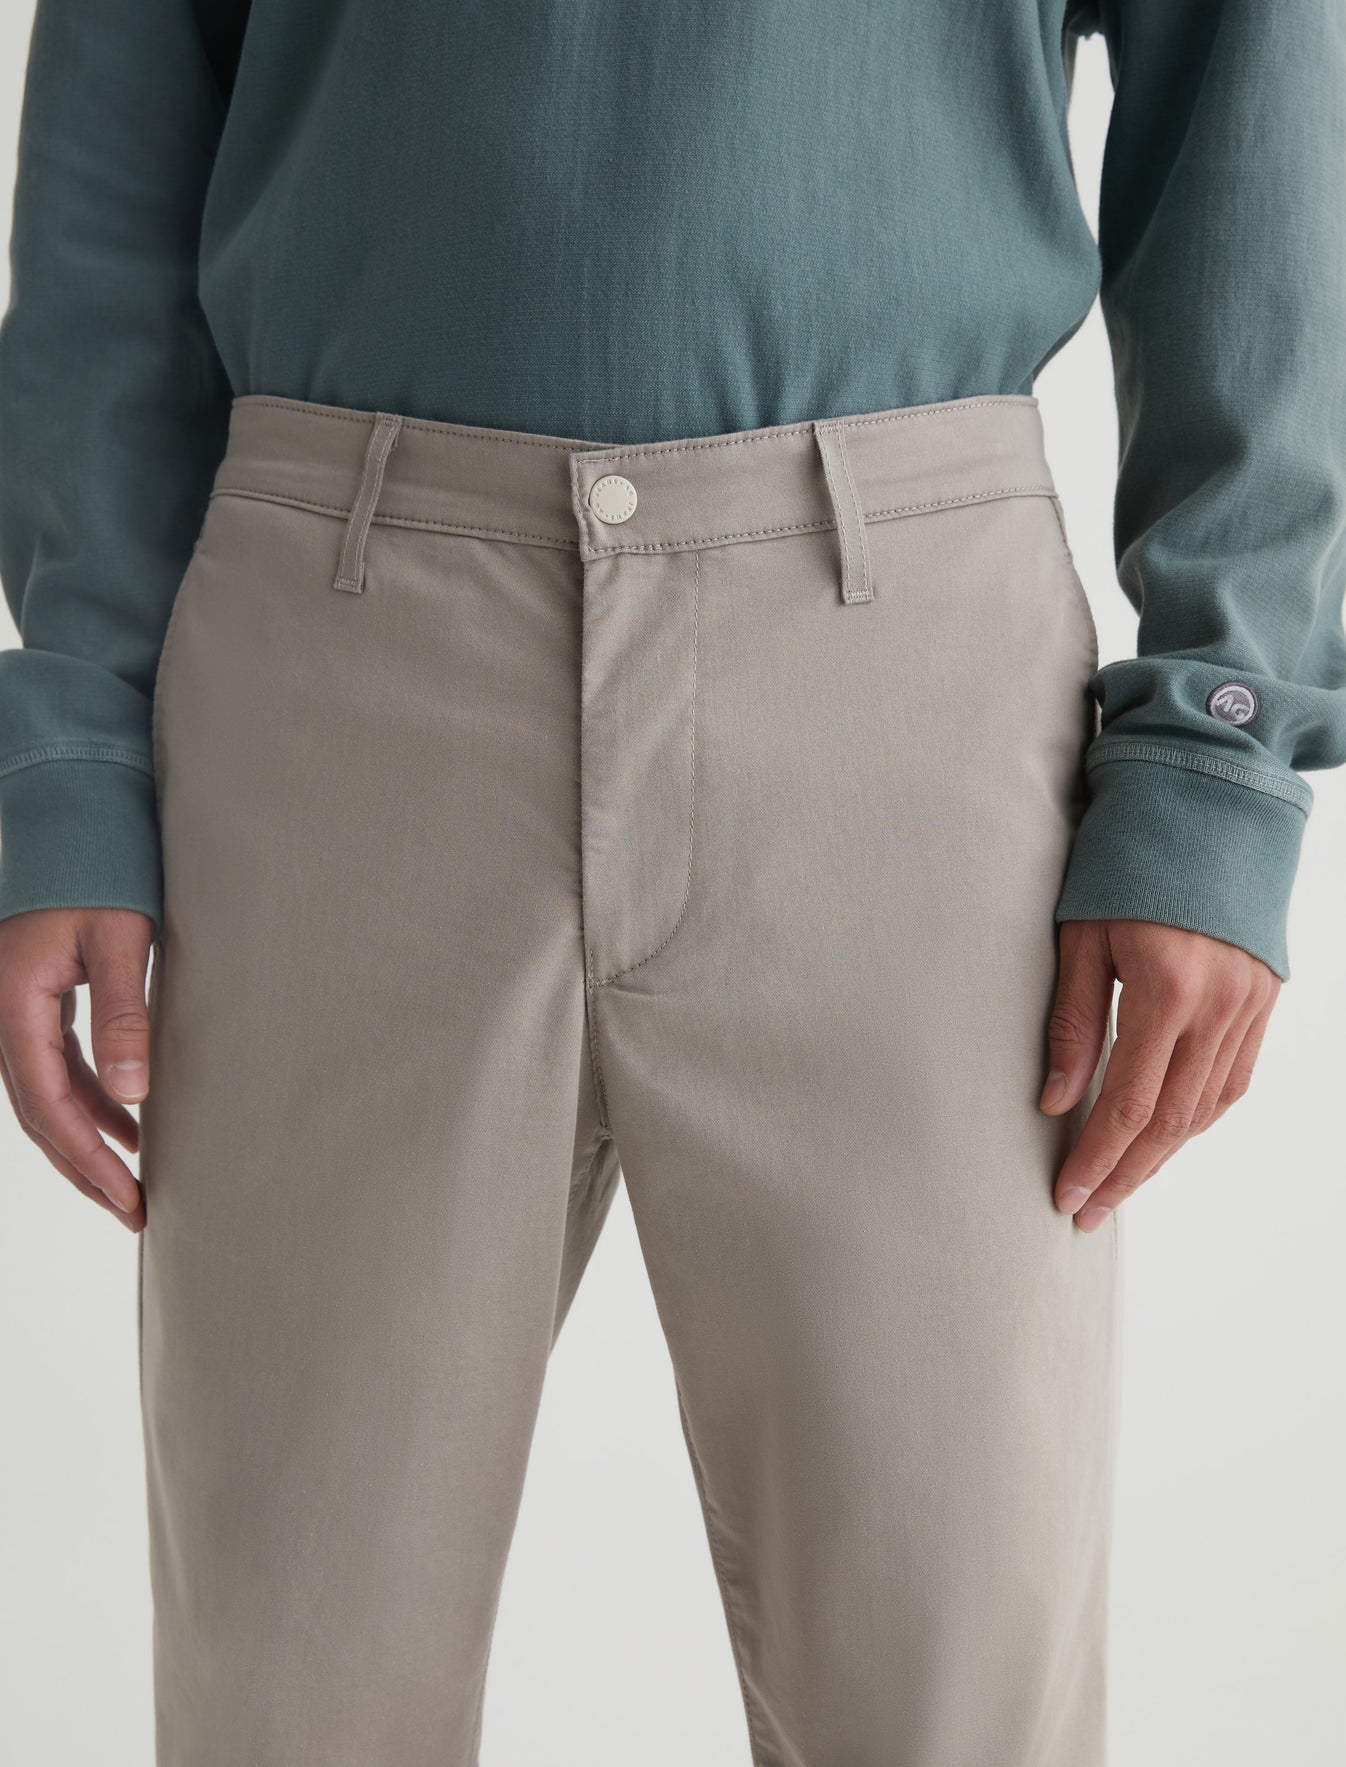 Kullen Performance Dry Dust Airluxe™ Slim Trouser Men Bottom Photo 3